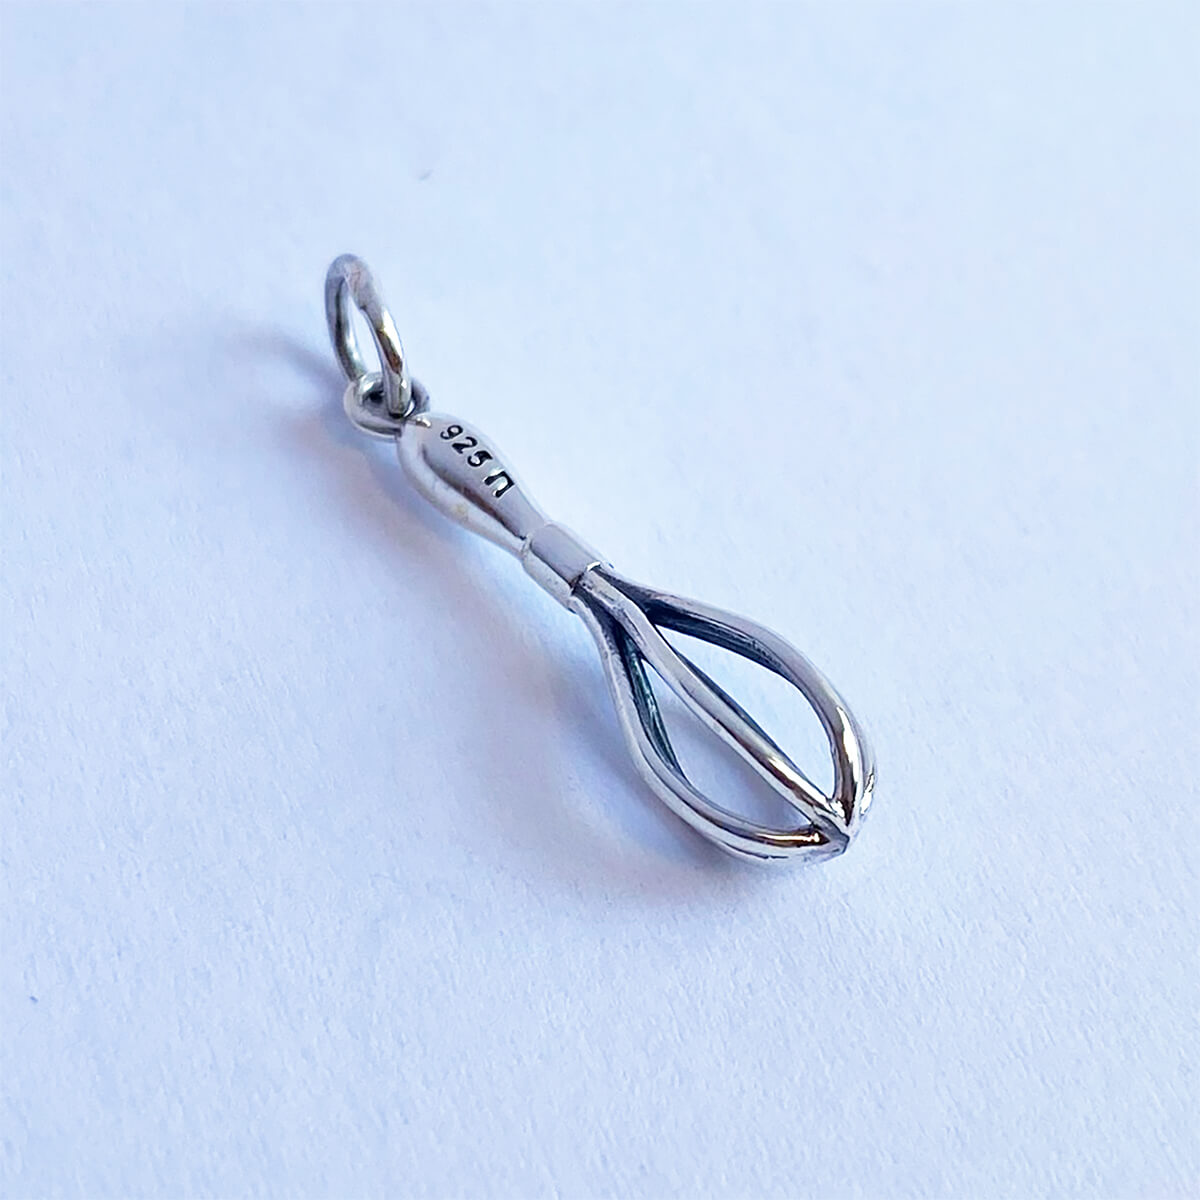 Egg whisk charm sterling silver pendant